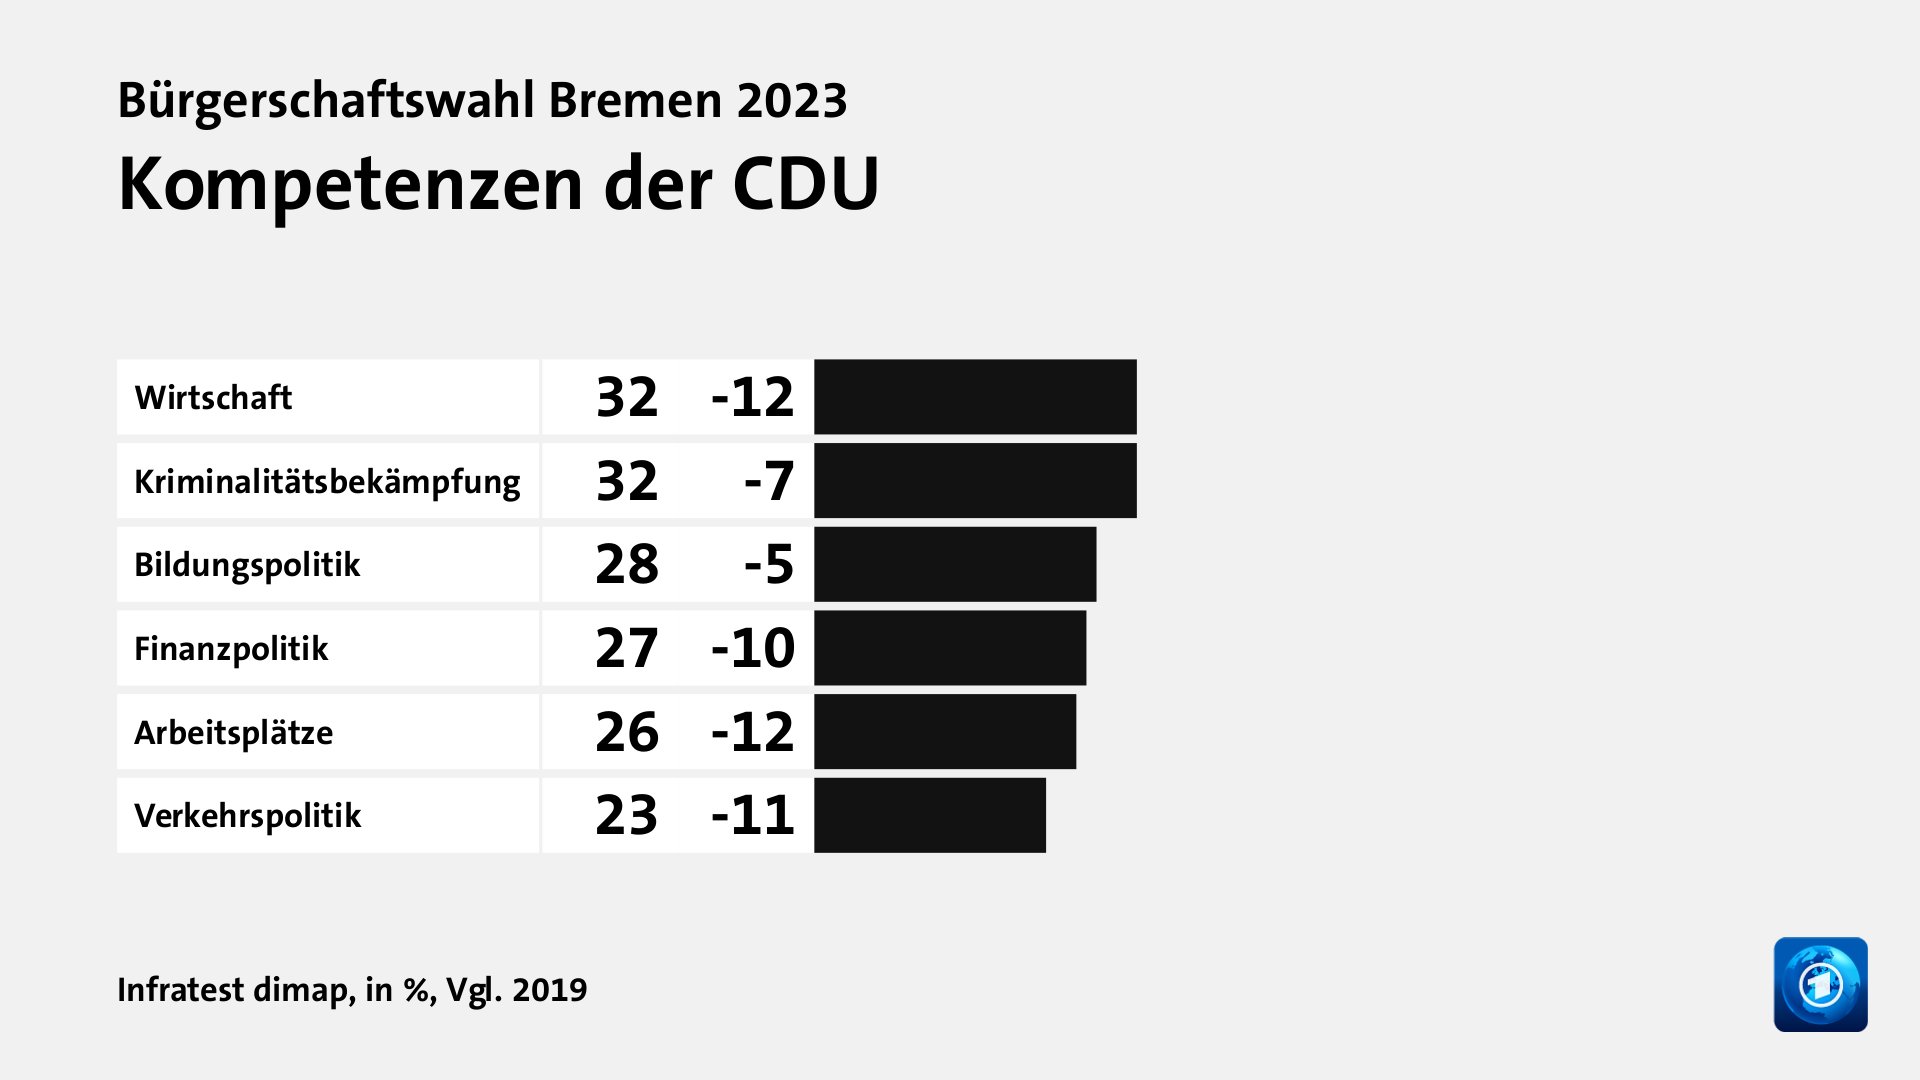 Wer wählte die CDU - und warum?